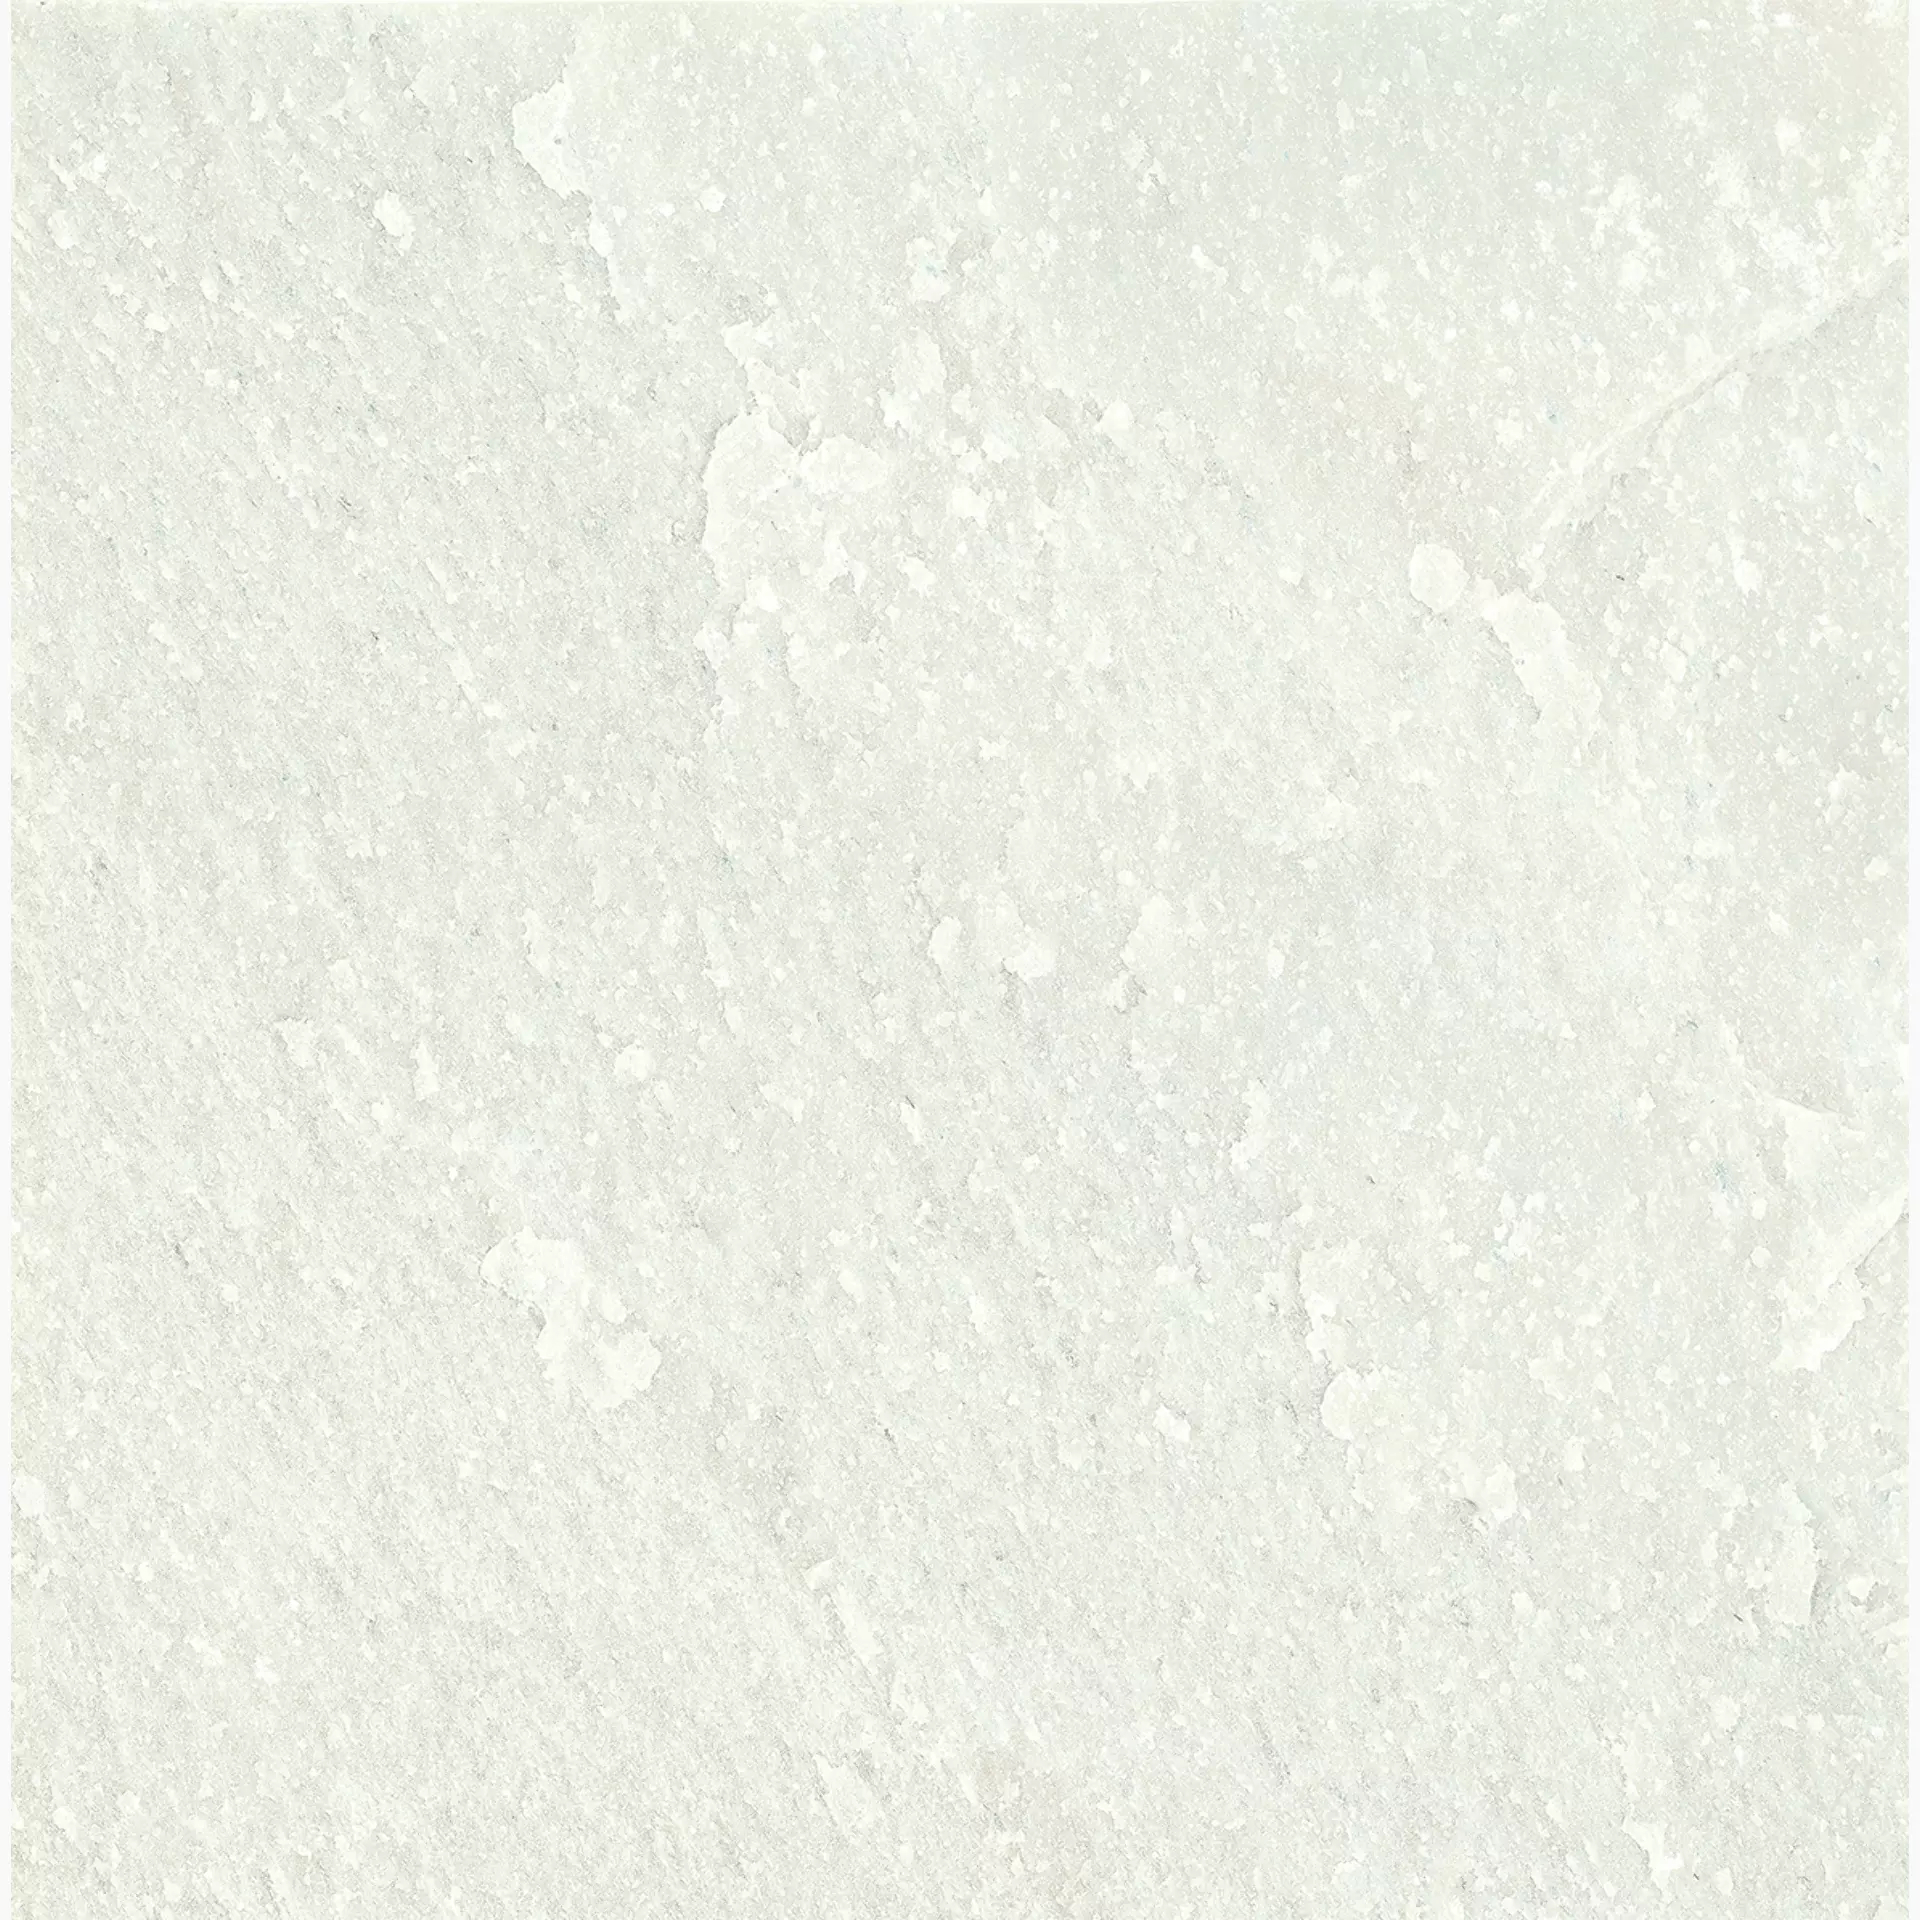 Ergon Oros Stone White Naturale EKL6 60x60cm rectified 9,5mm